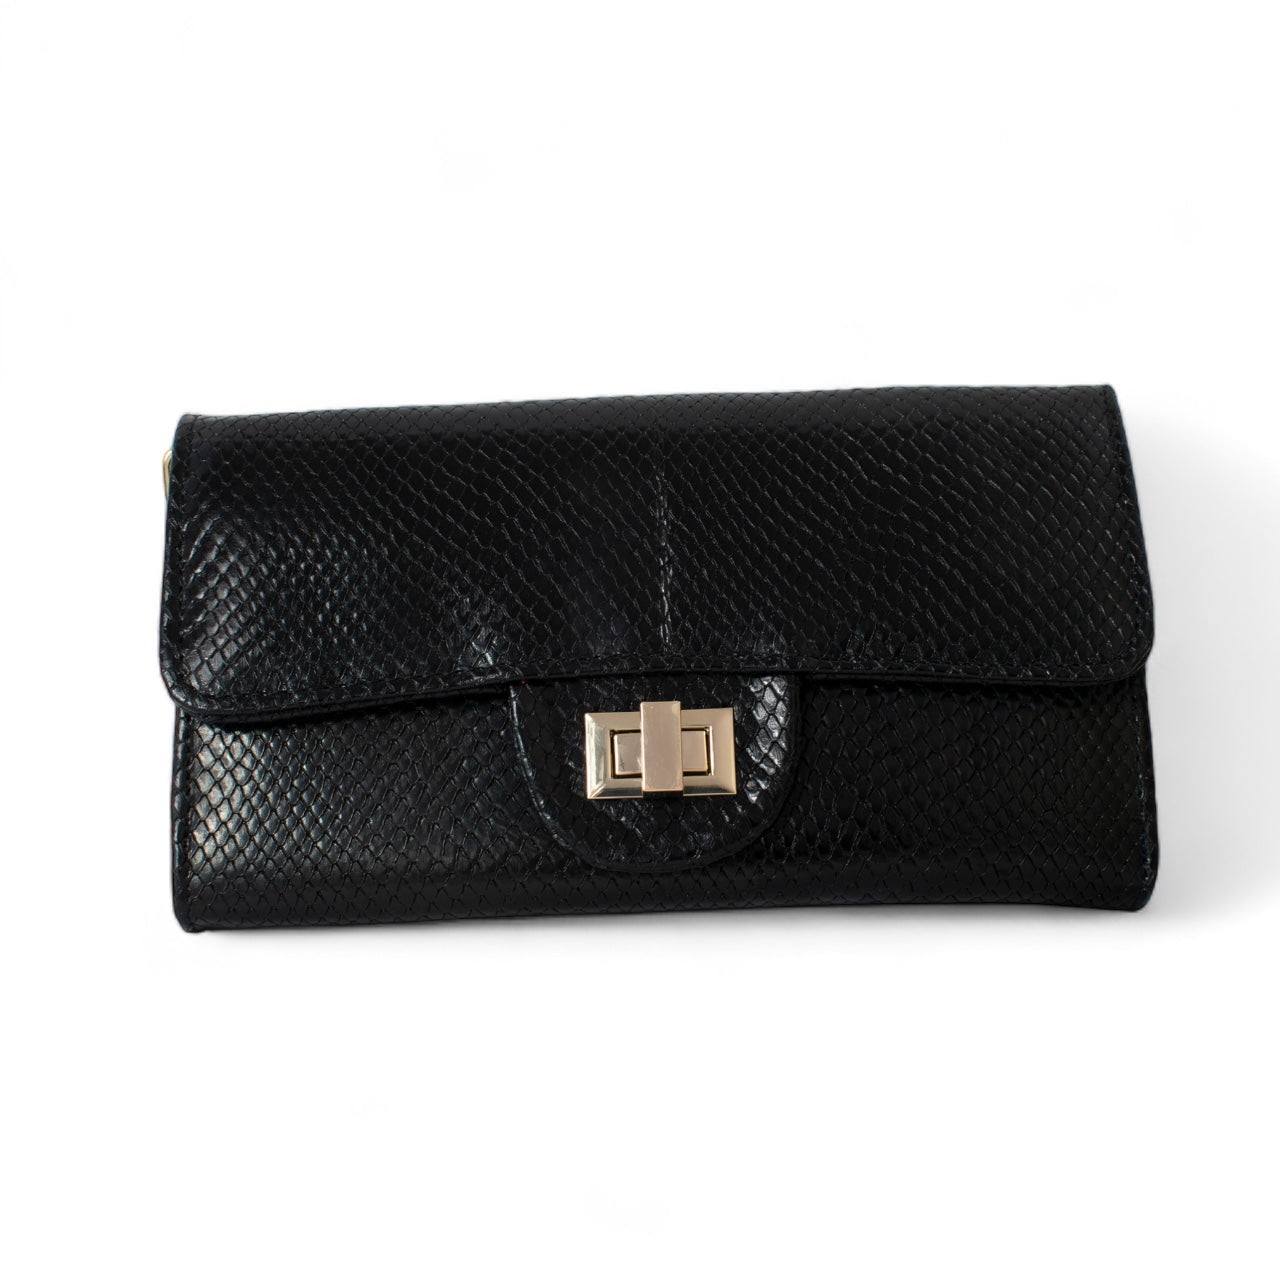 Milan wallet black